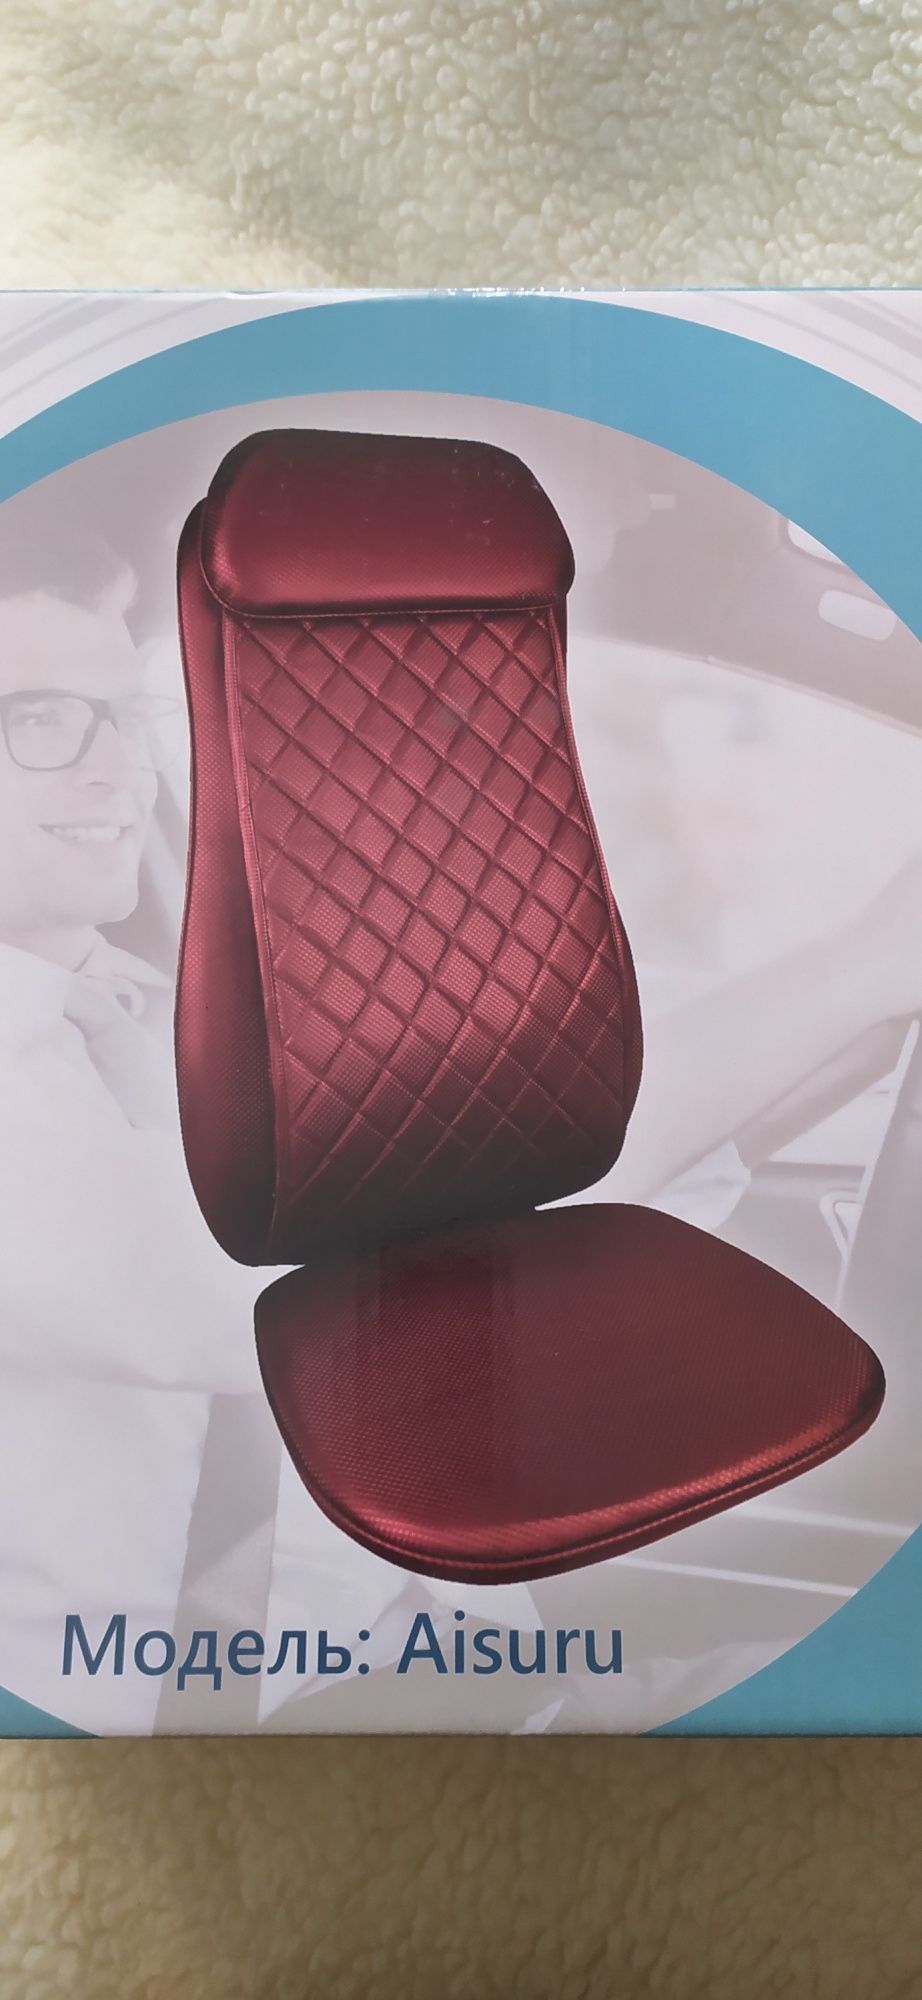 Продам массажное кресло